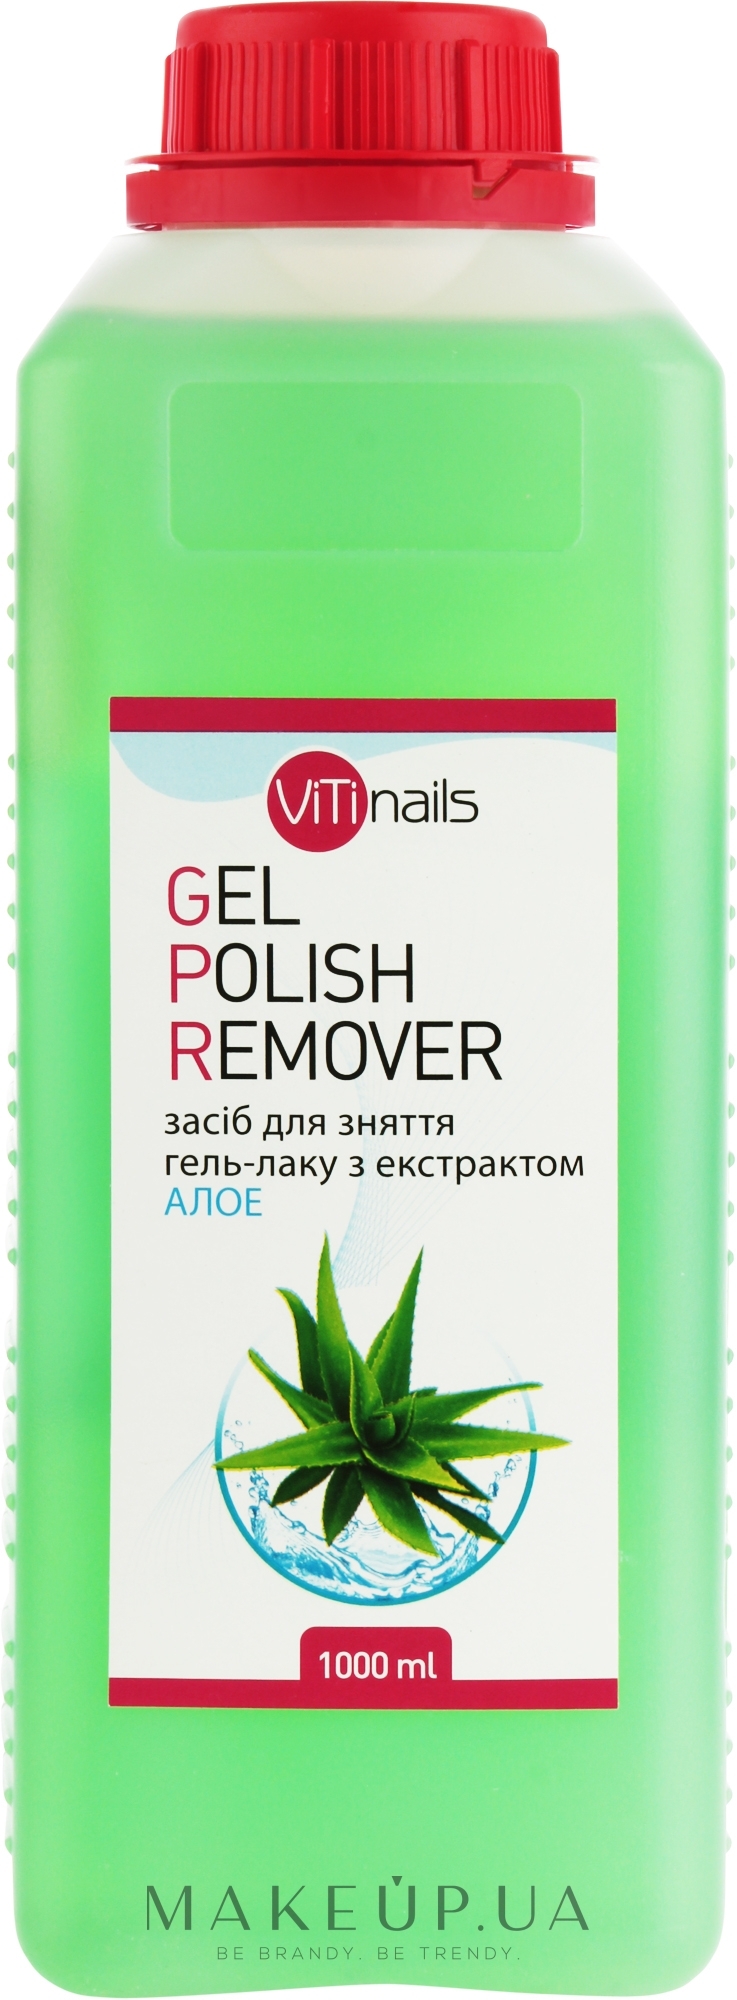 Жидкость для снятия гель-лака с экстрактом алоэ - ViTinails Gel Polish Remover — фото 1000ml